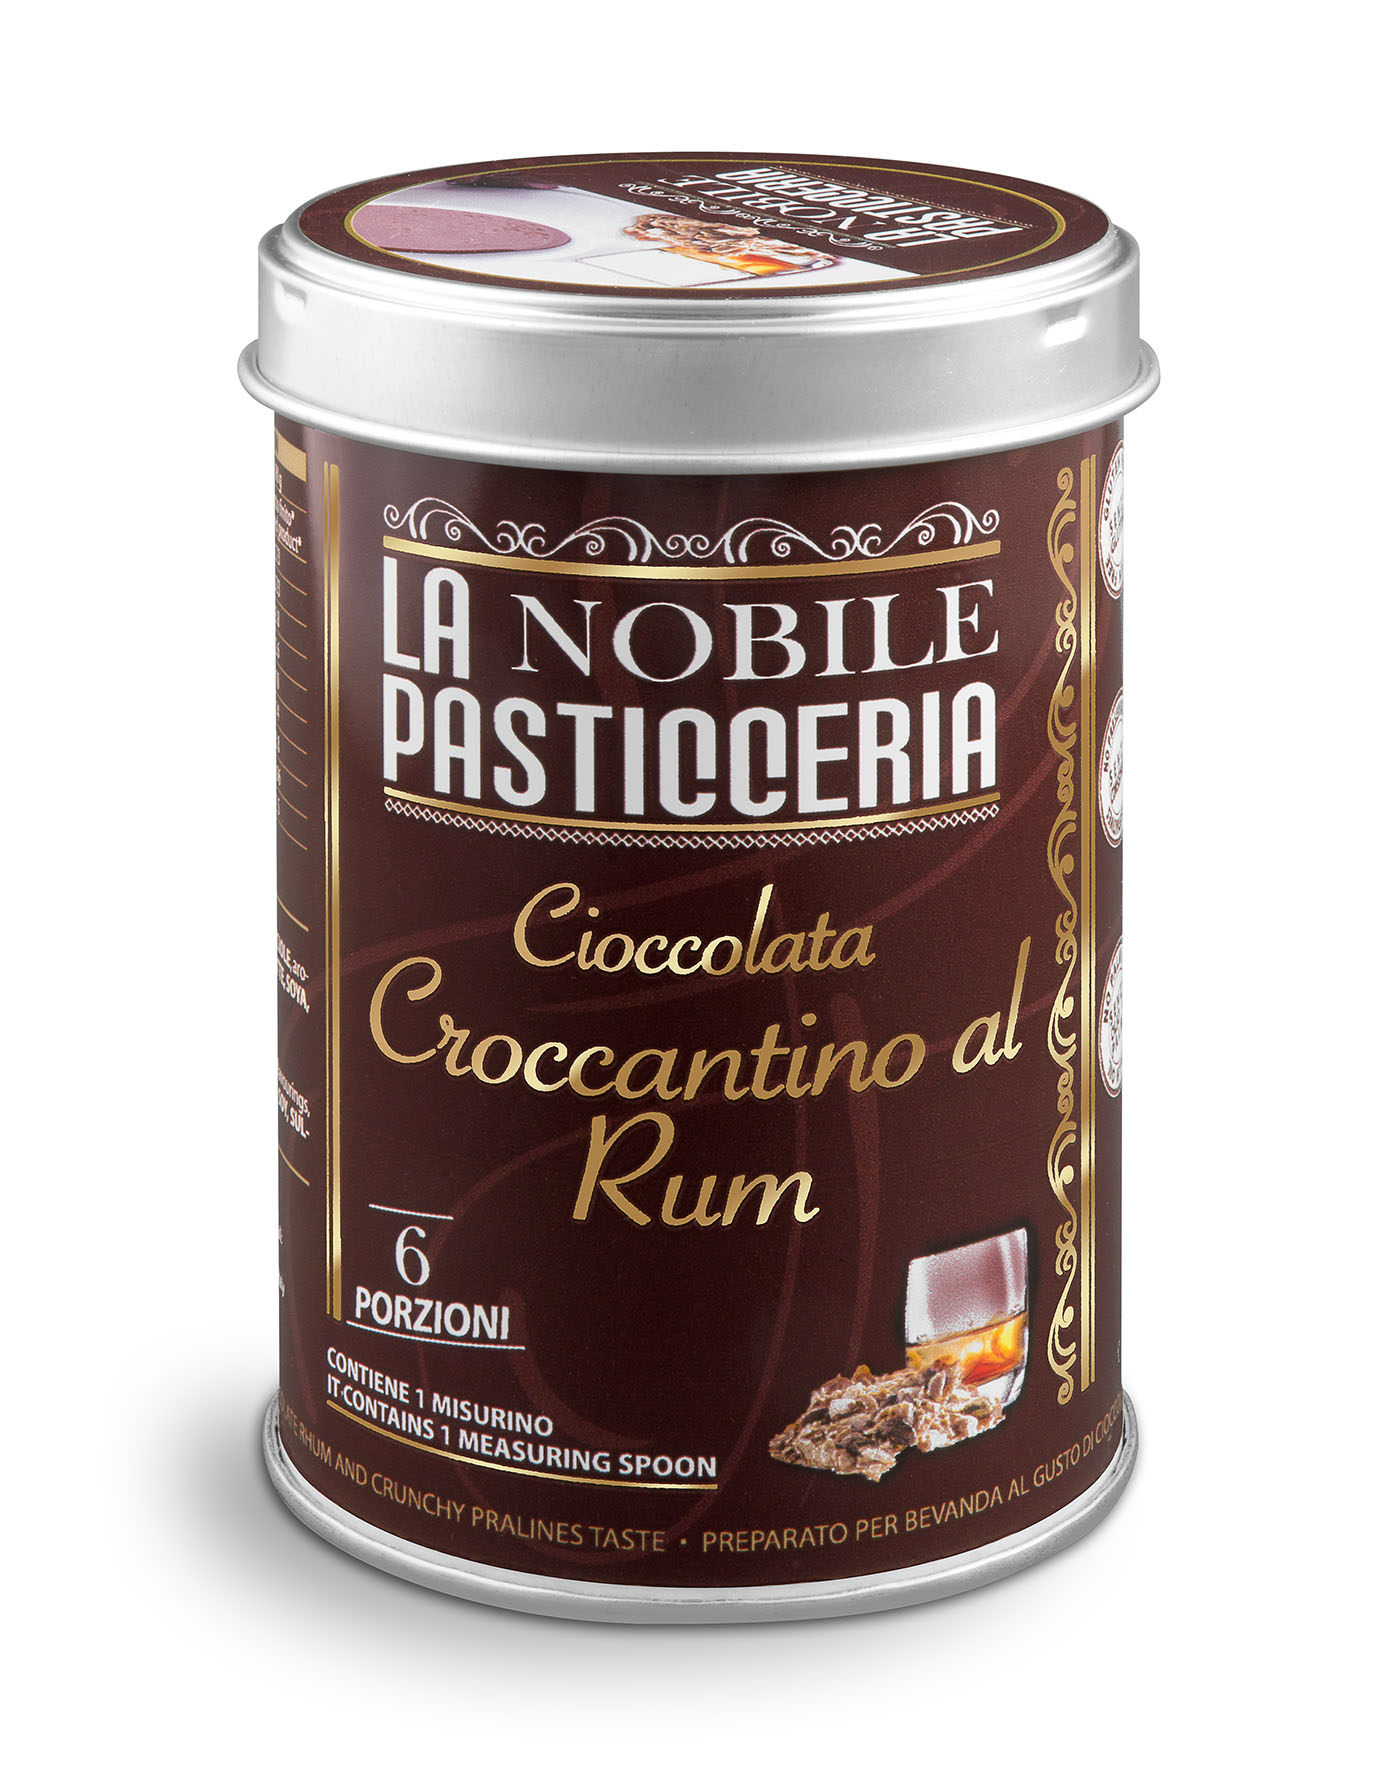 La Nobile Pasticceria - Cioccolata Croccantino al Rum